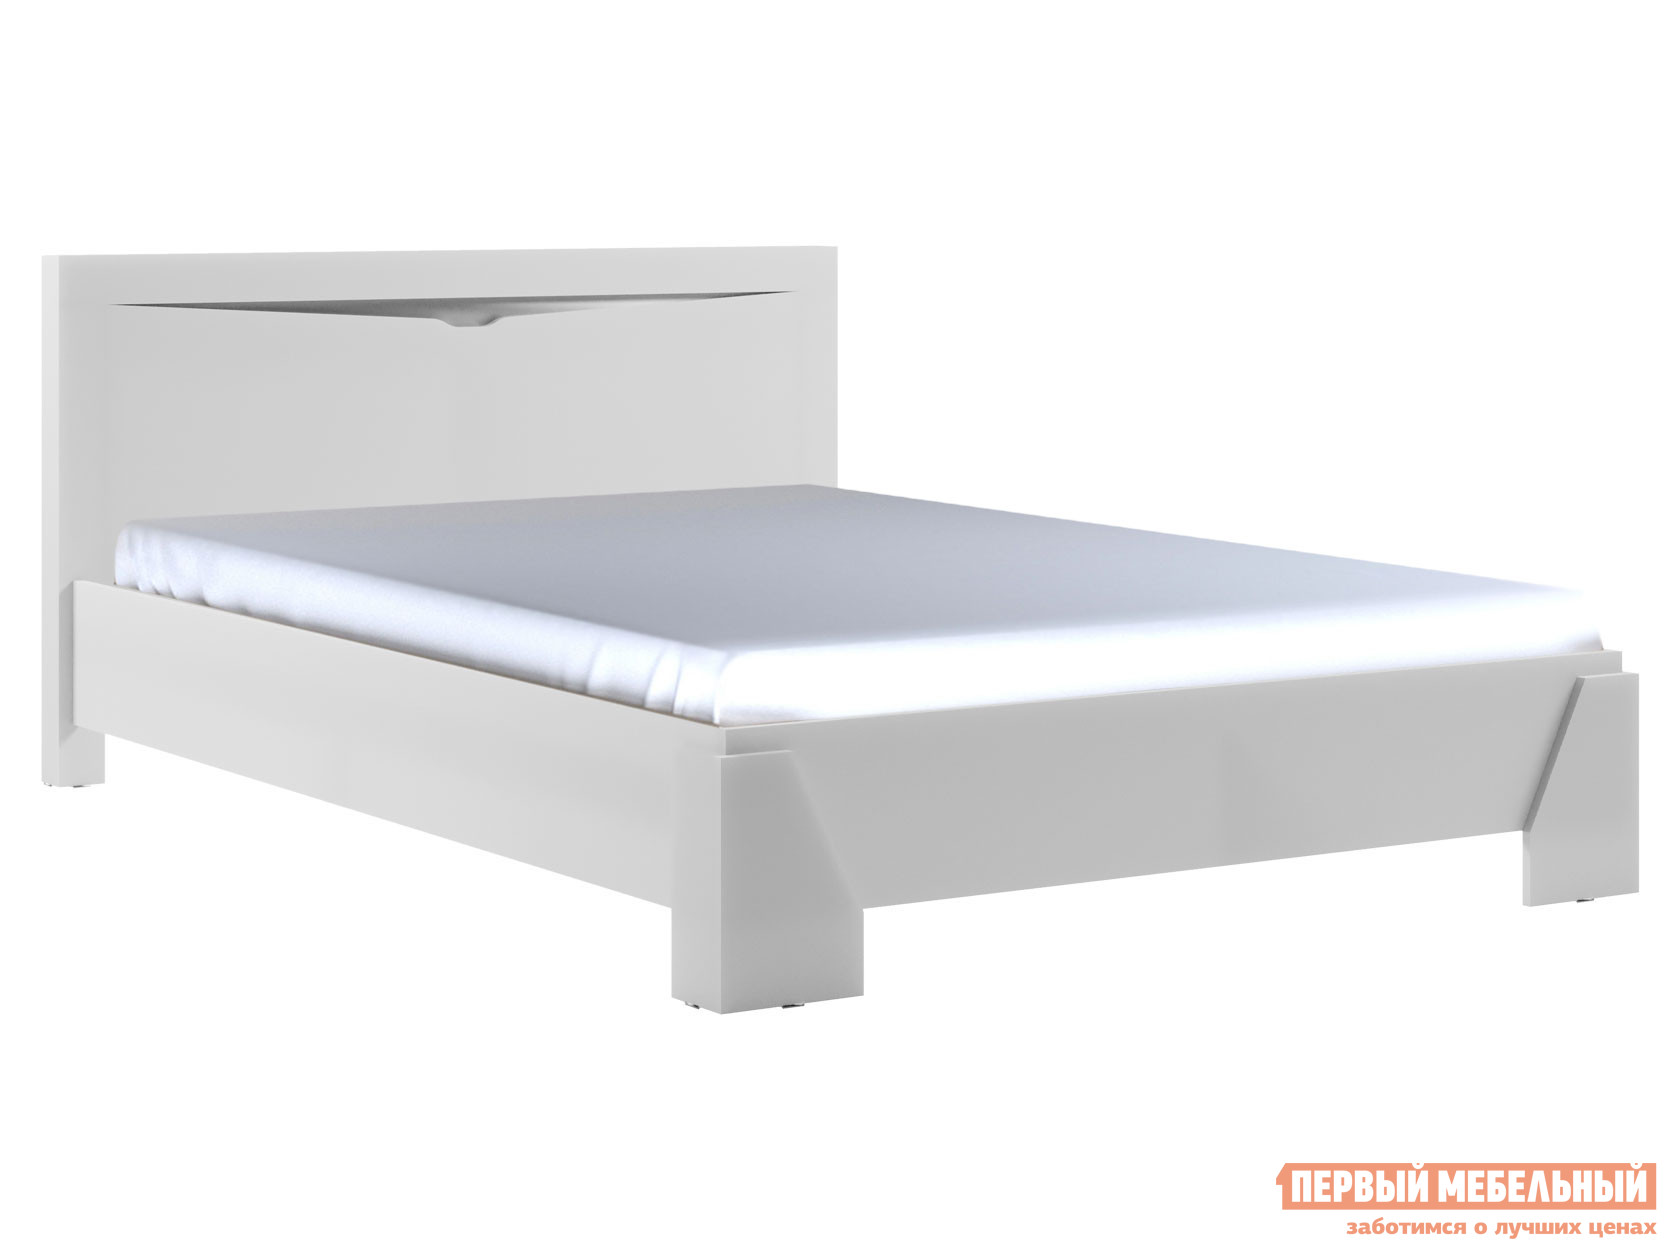 Двуспальная кровать  Мэрвел Белый, 140х200 см